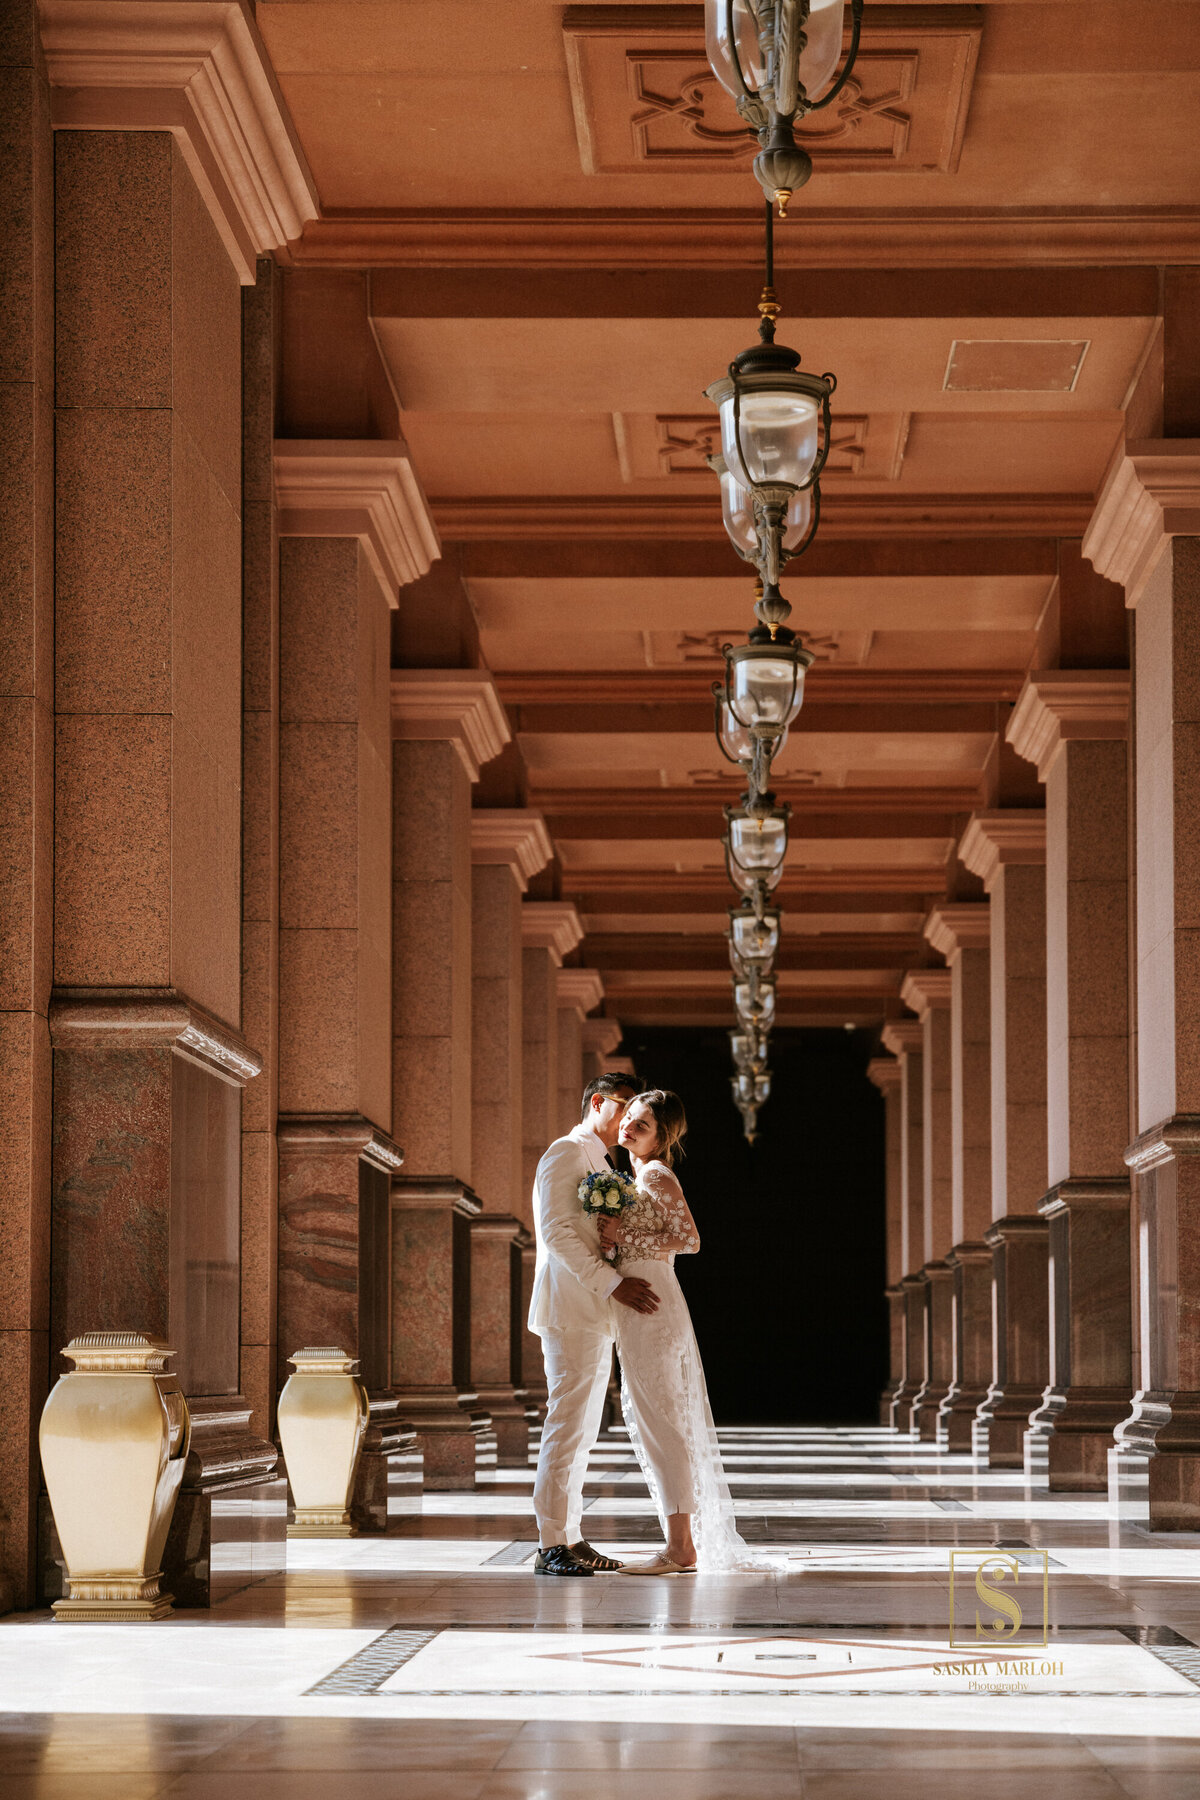 EMIRATES-PALACE-WEDDING-by-female-photographer-Saskia-Marloh-185